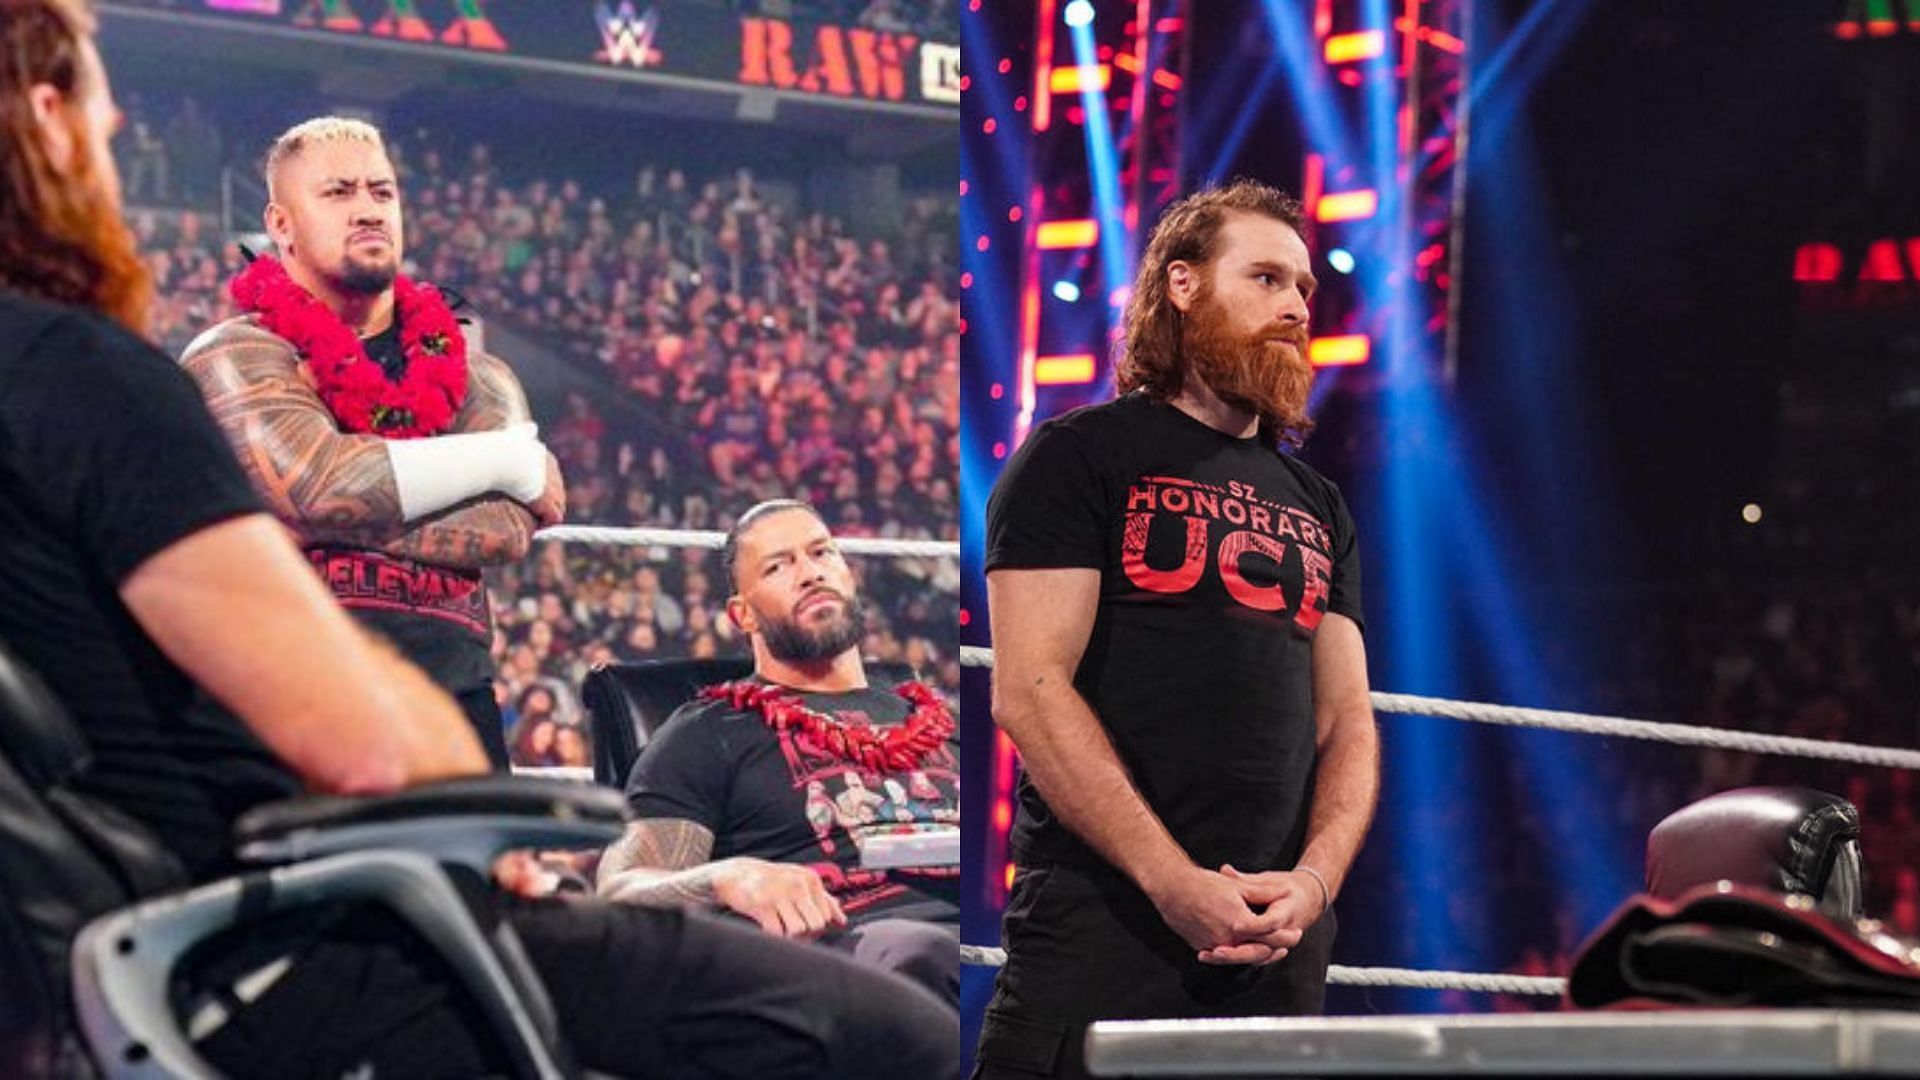 Sami Zayn will have a big night at the Royal Rumble